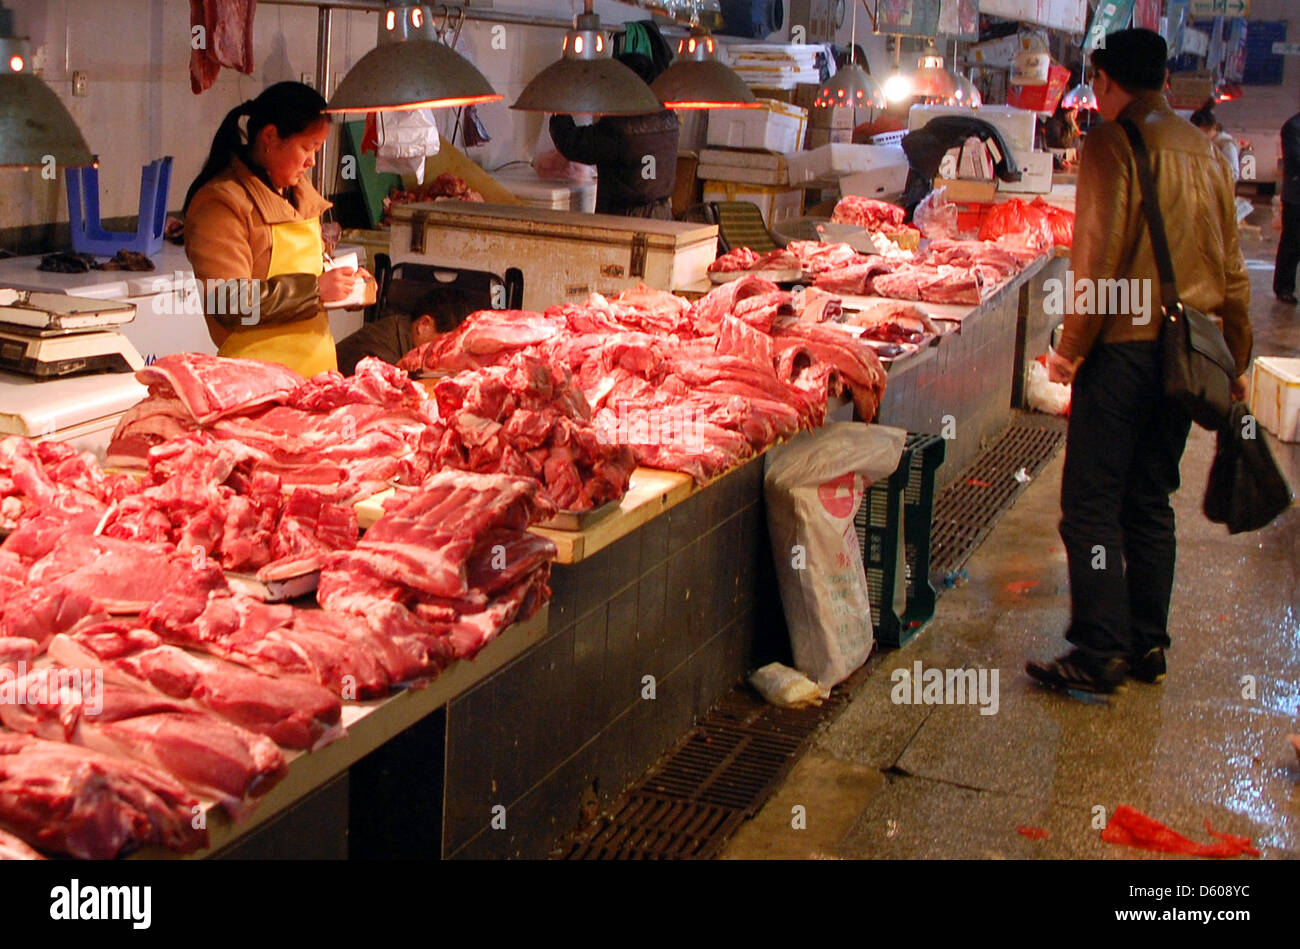 Pechino, 09 aprile 2013. Una donna vende carne in un mercato hall di Pechino. La nuova influenza aviaria H7N9 mantiene la Cina in suspense: nessuno sa quanto l'influenza si è diffusa e la gente mangia meno volatili. Foto: Stephan Scheuer/DPA/Alamy Live News Foto Stock